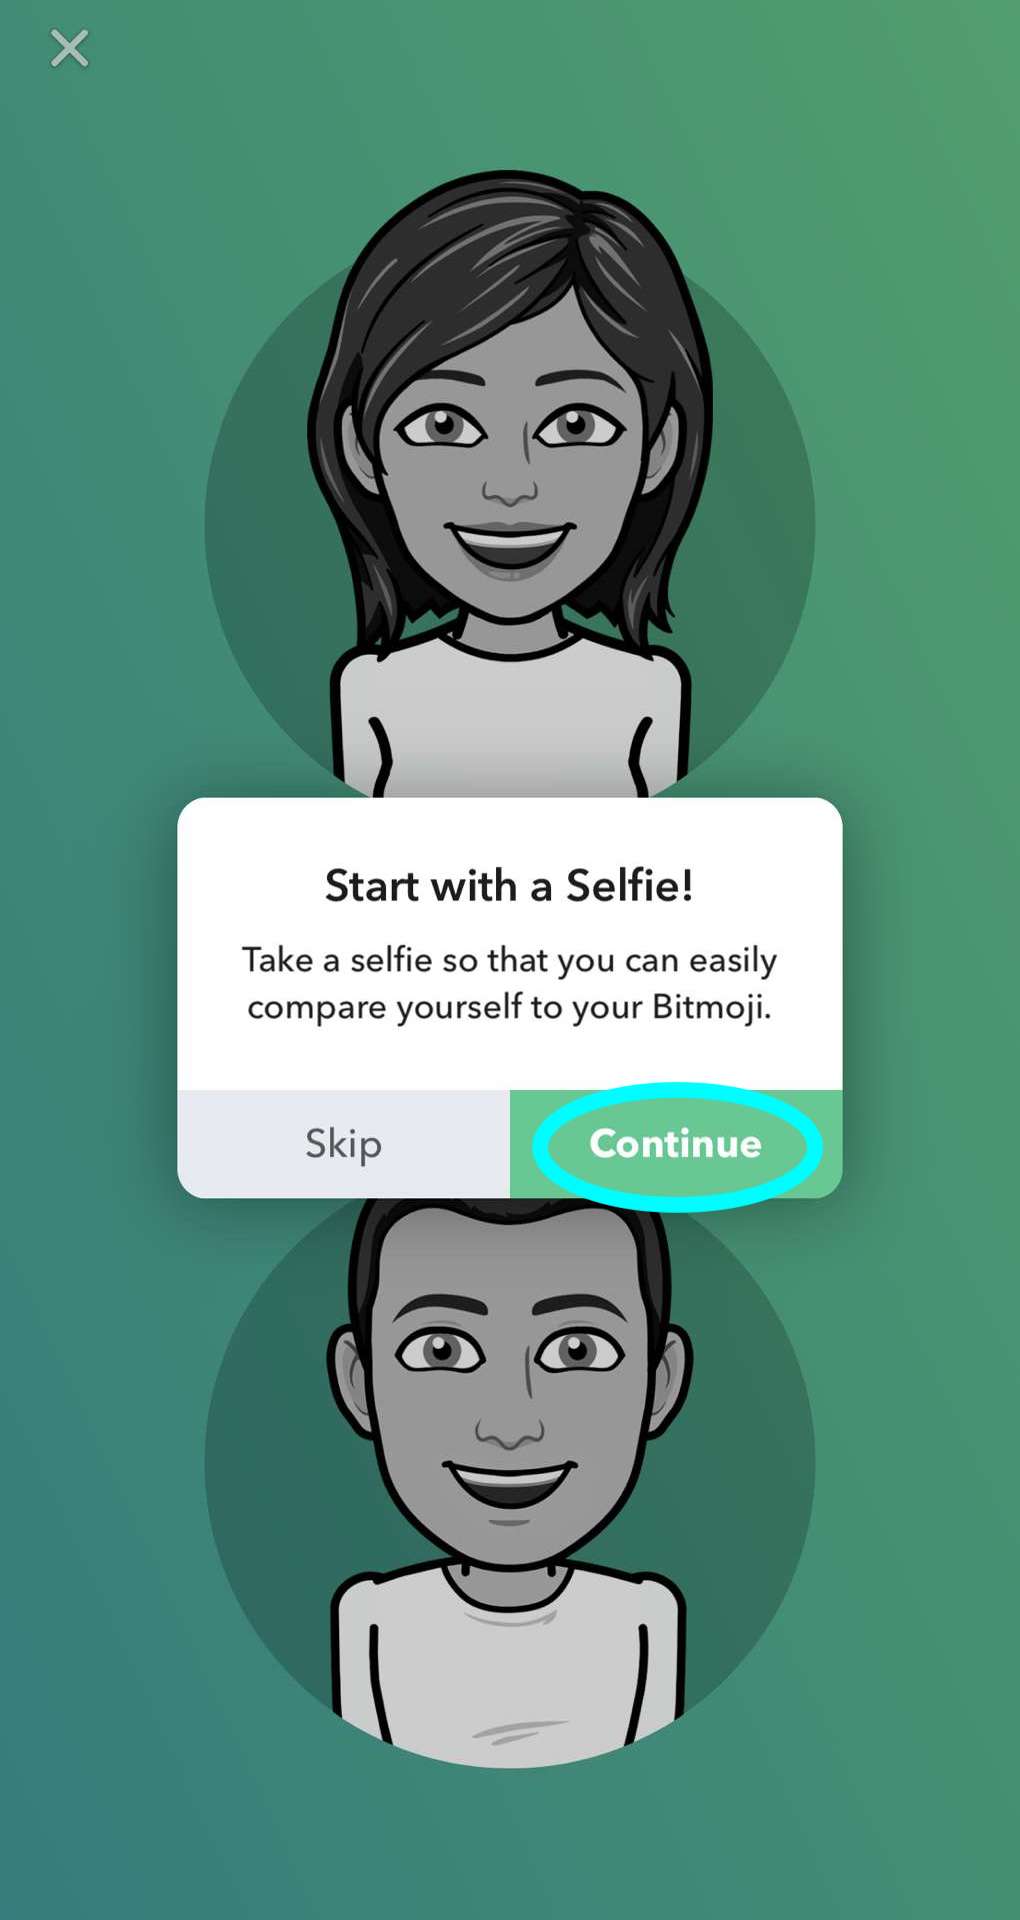 Ein Pop-up, das den Nutzer auffordert, mit einem Selfie mit der Avatarerstellung zu beginnen. Die Schaltfläche zum Aufnehmen des Selfies ist hervorgehoben.